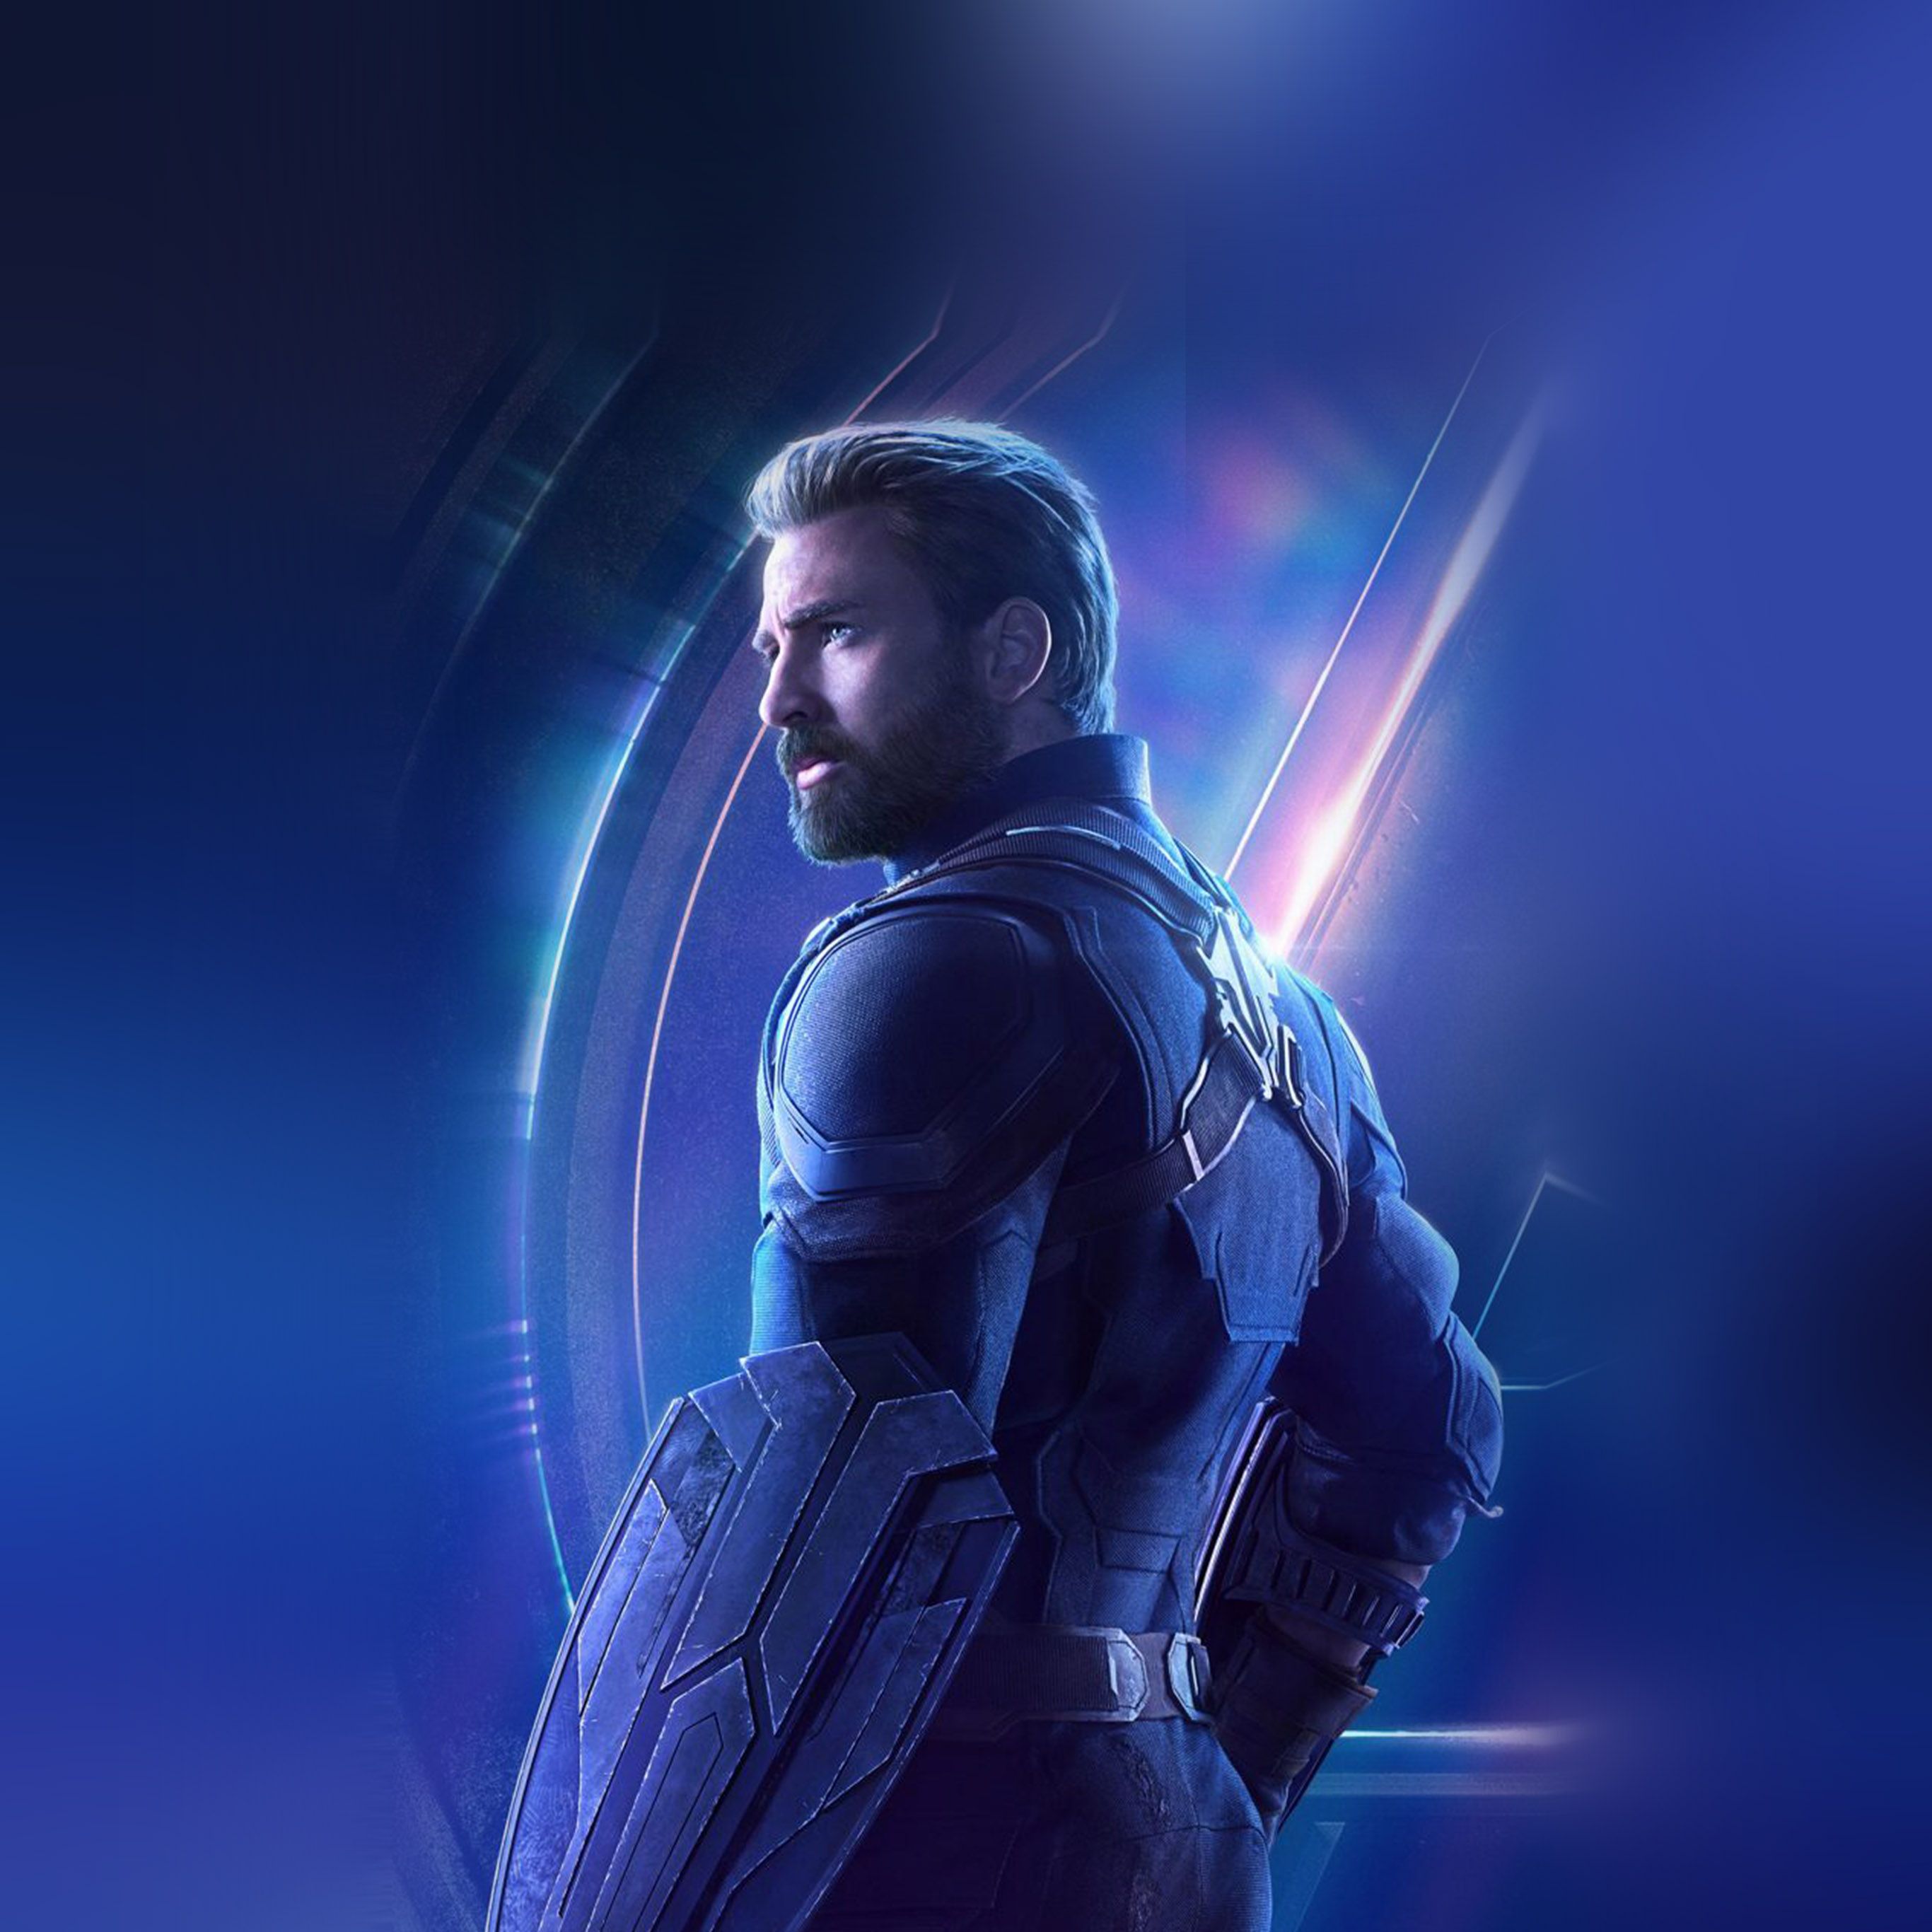 Captain America Avengers Hero Chris Evans Film Art Wallpaper